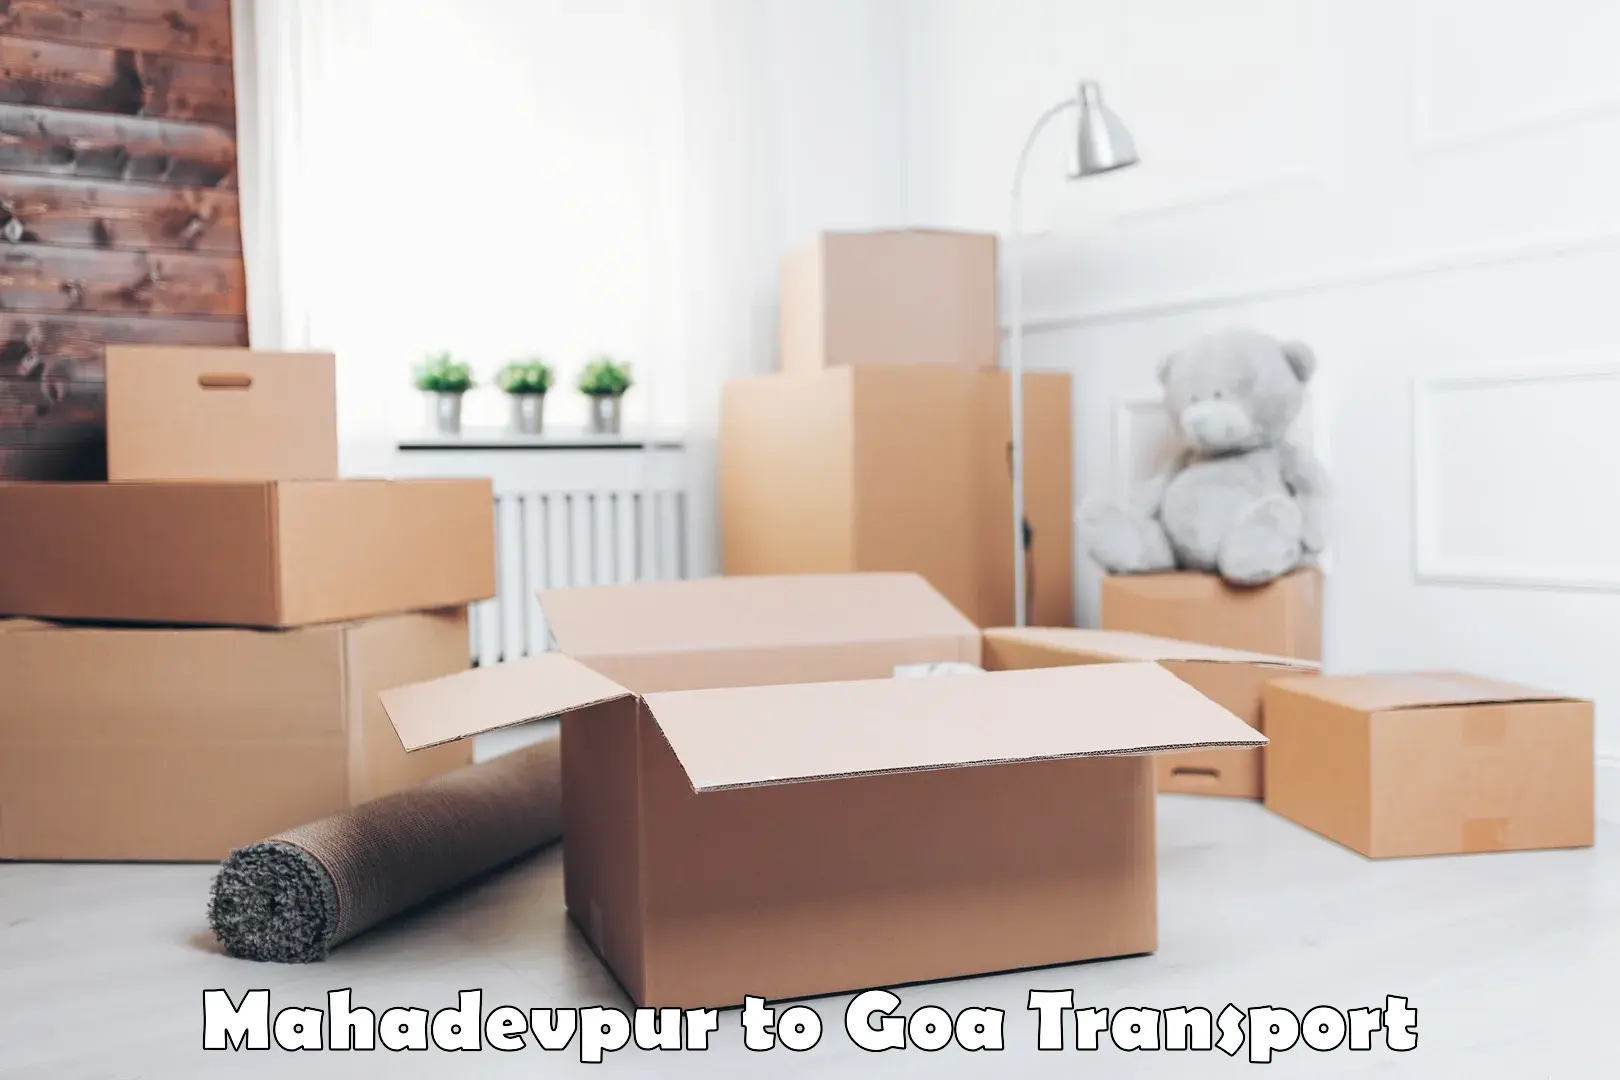 Interstate transport services Mahadevpur to IIT Goa